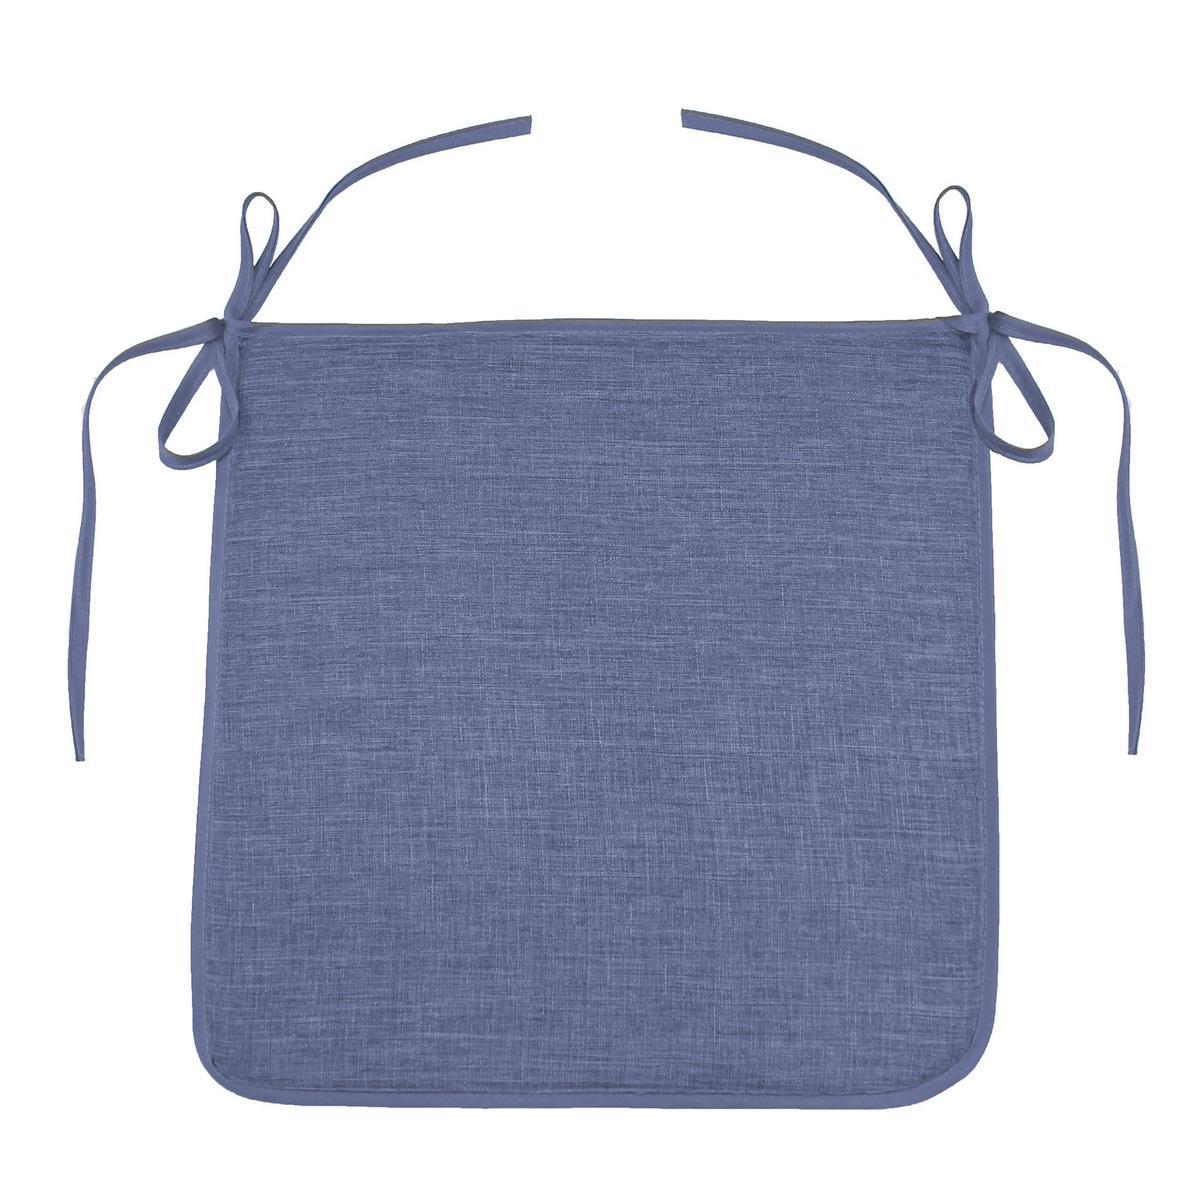 Galette de chaise - 40 x 40 x H 3,5 cm - Bleu